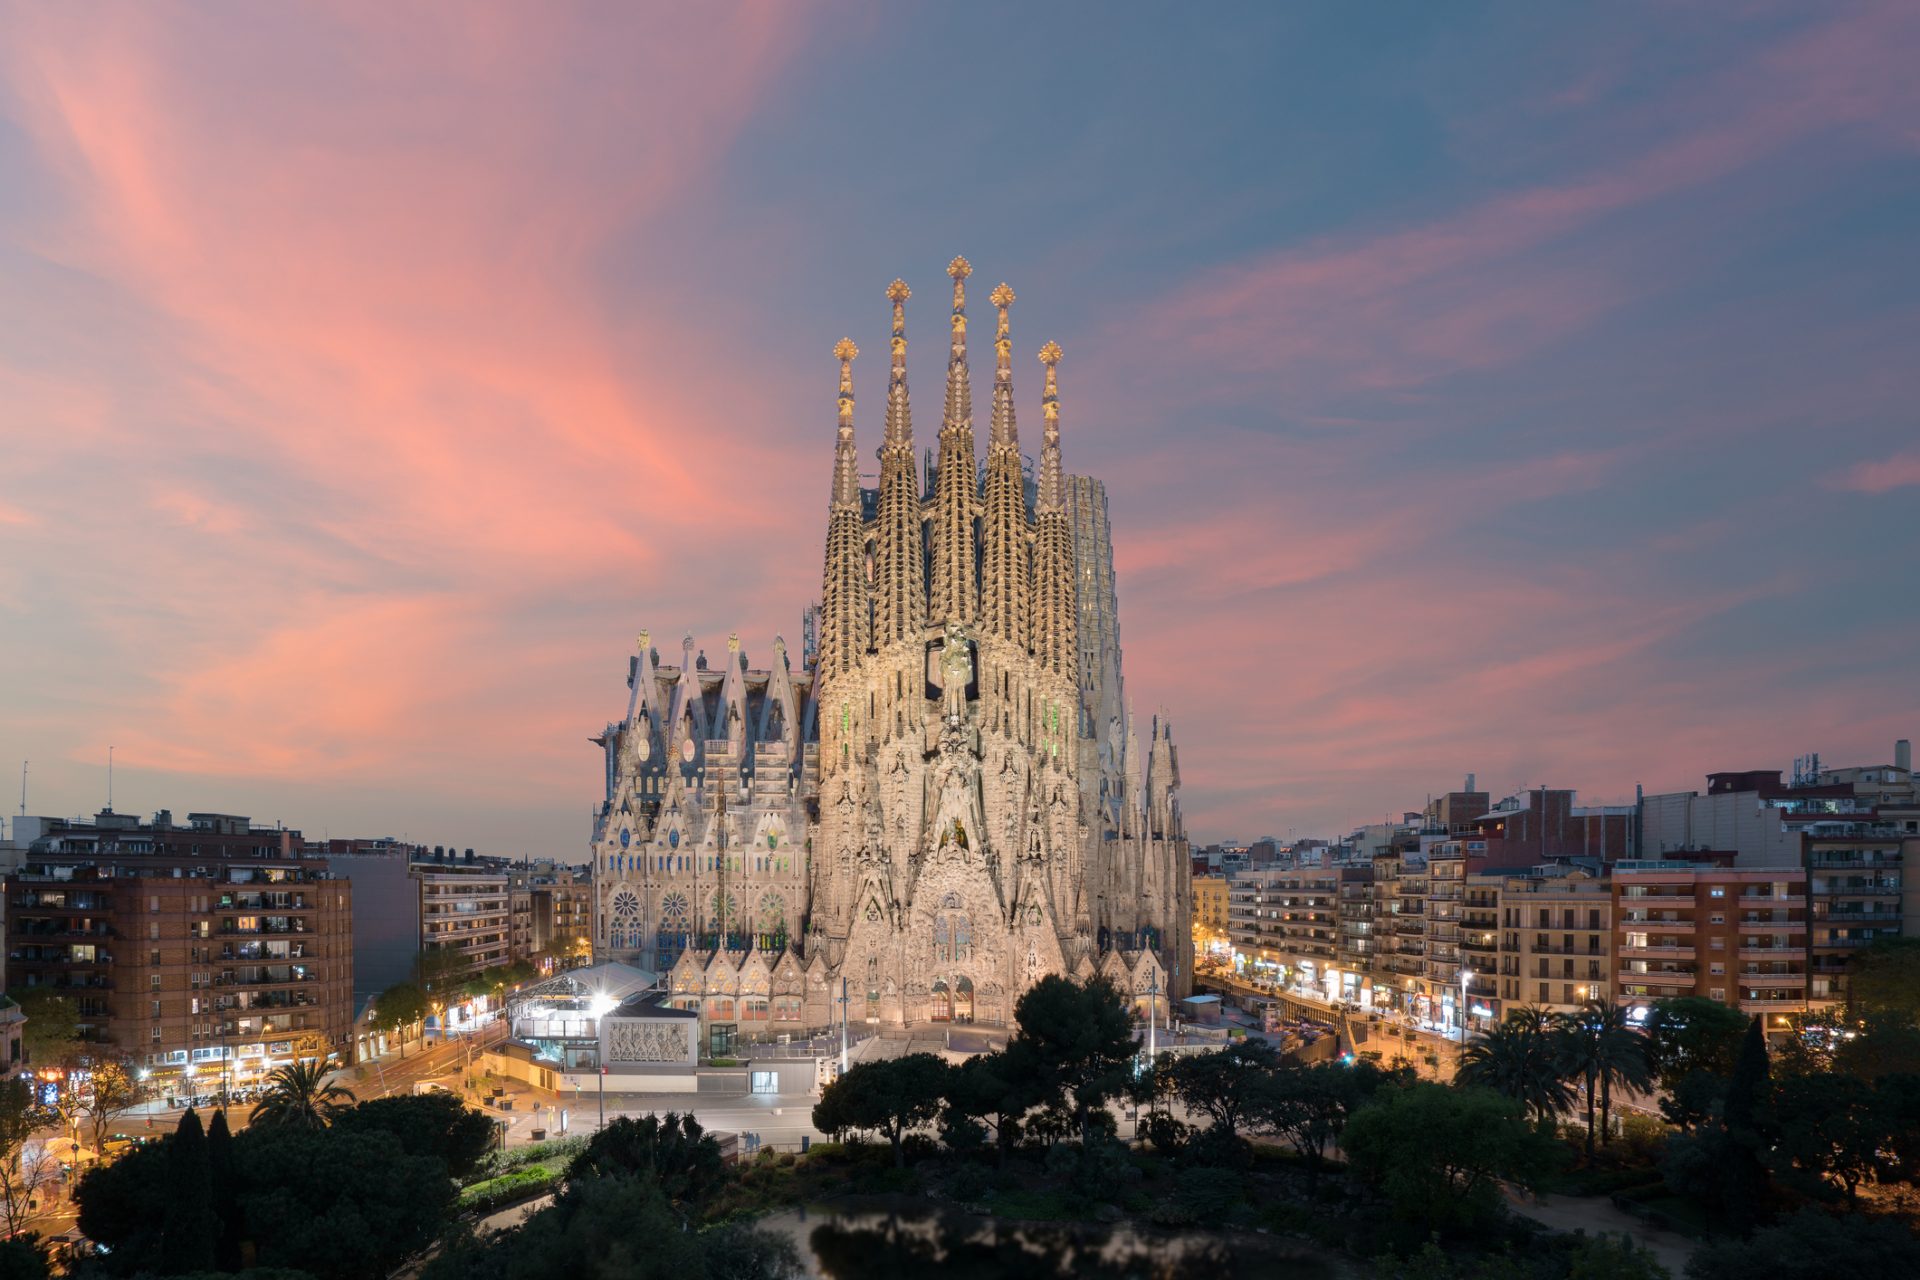 Terminar obras da igreja da Sagrada Família vai custar 374 milhões de euros